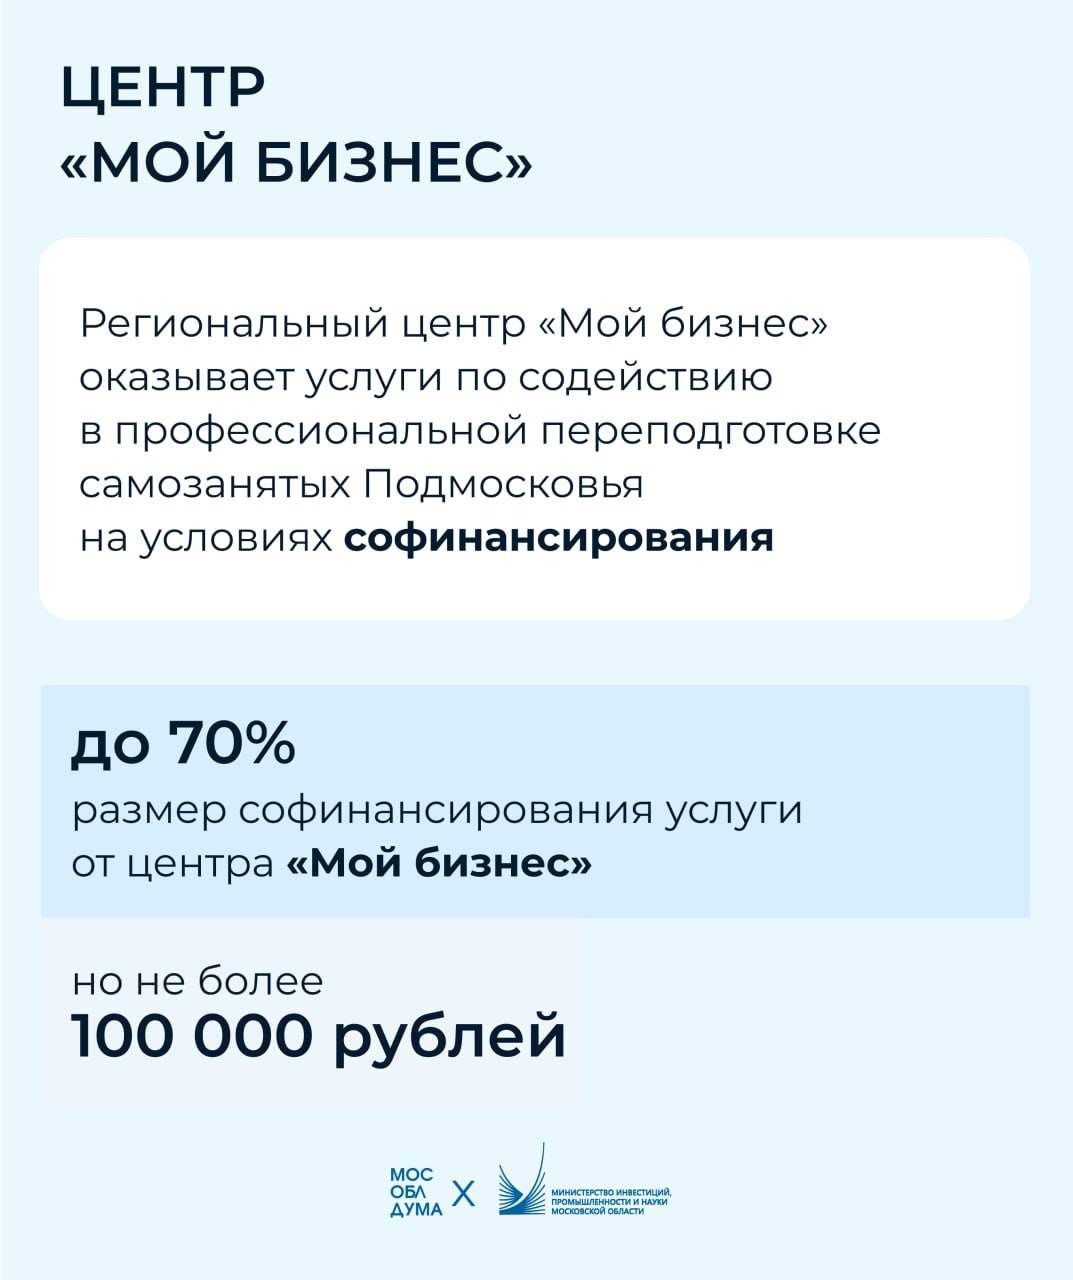 Московская область занимает второе место в России по количеству самозанятых